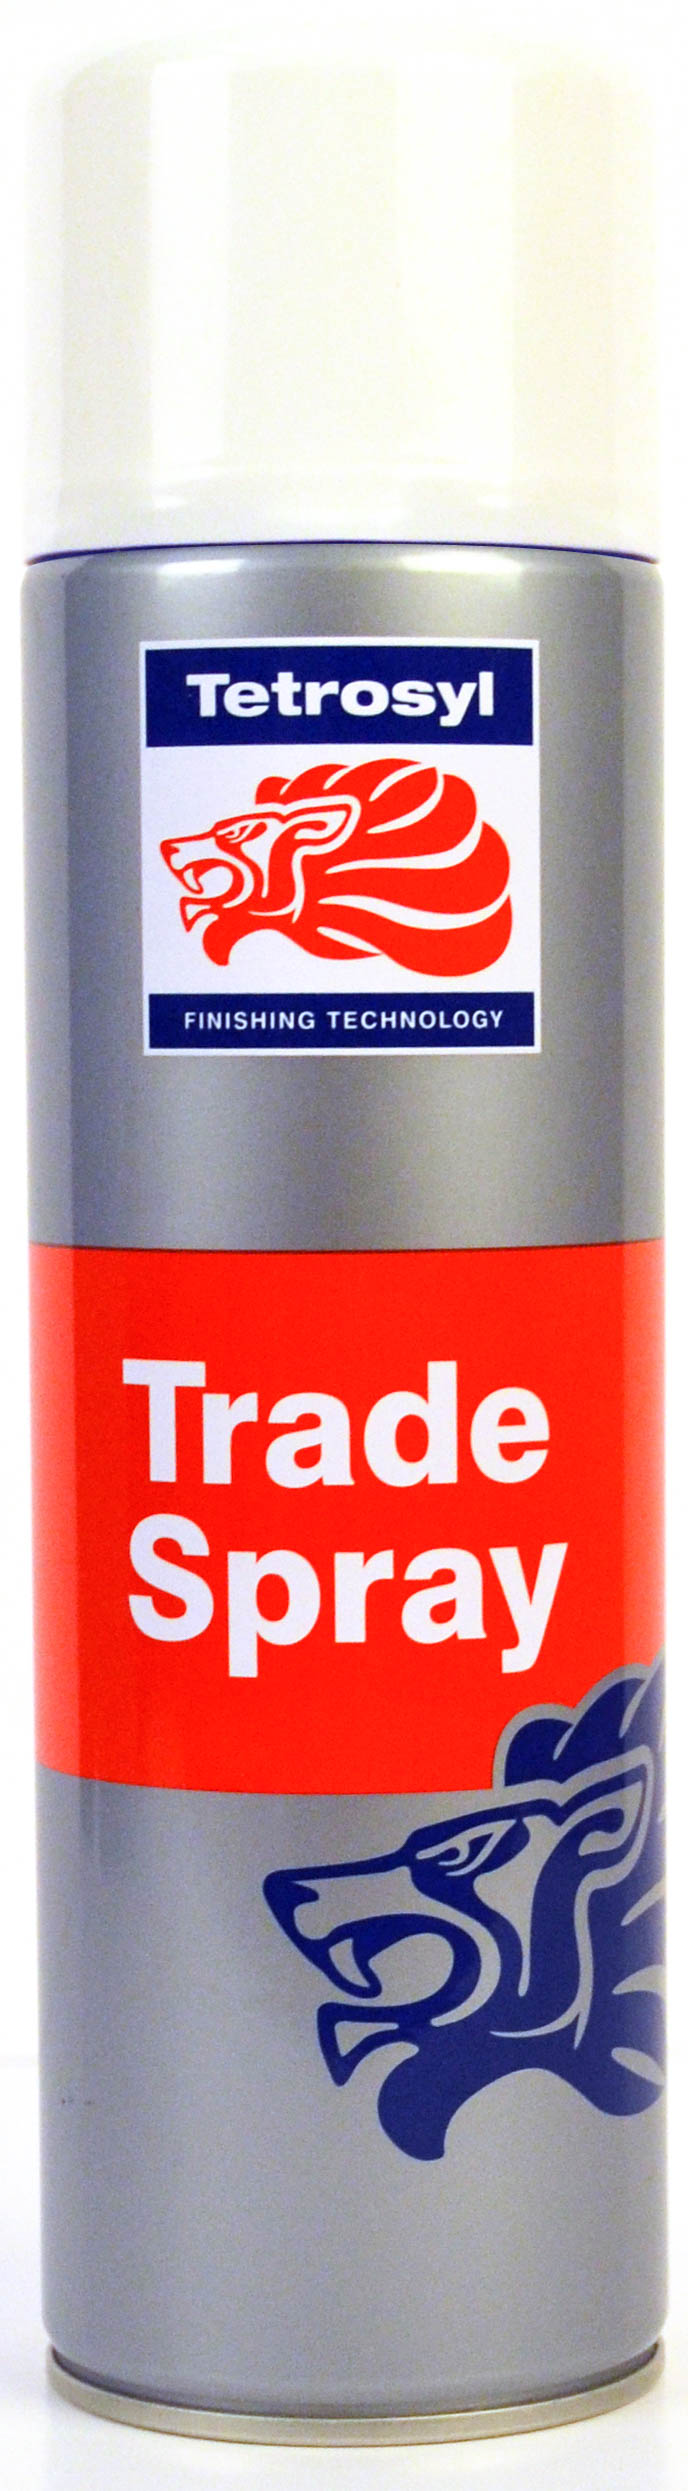 Picture of Tetrosyl Trade Spray White Primer 500ml